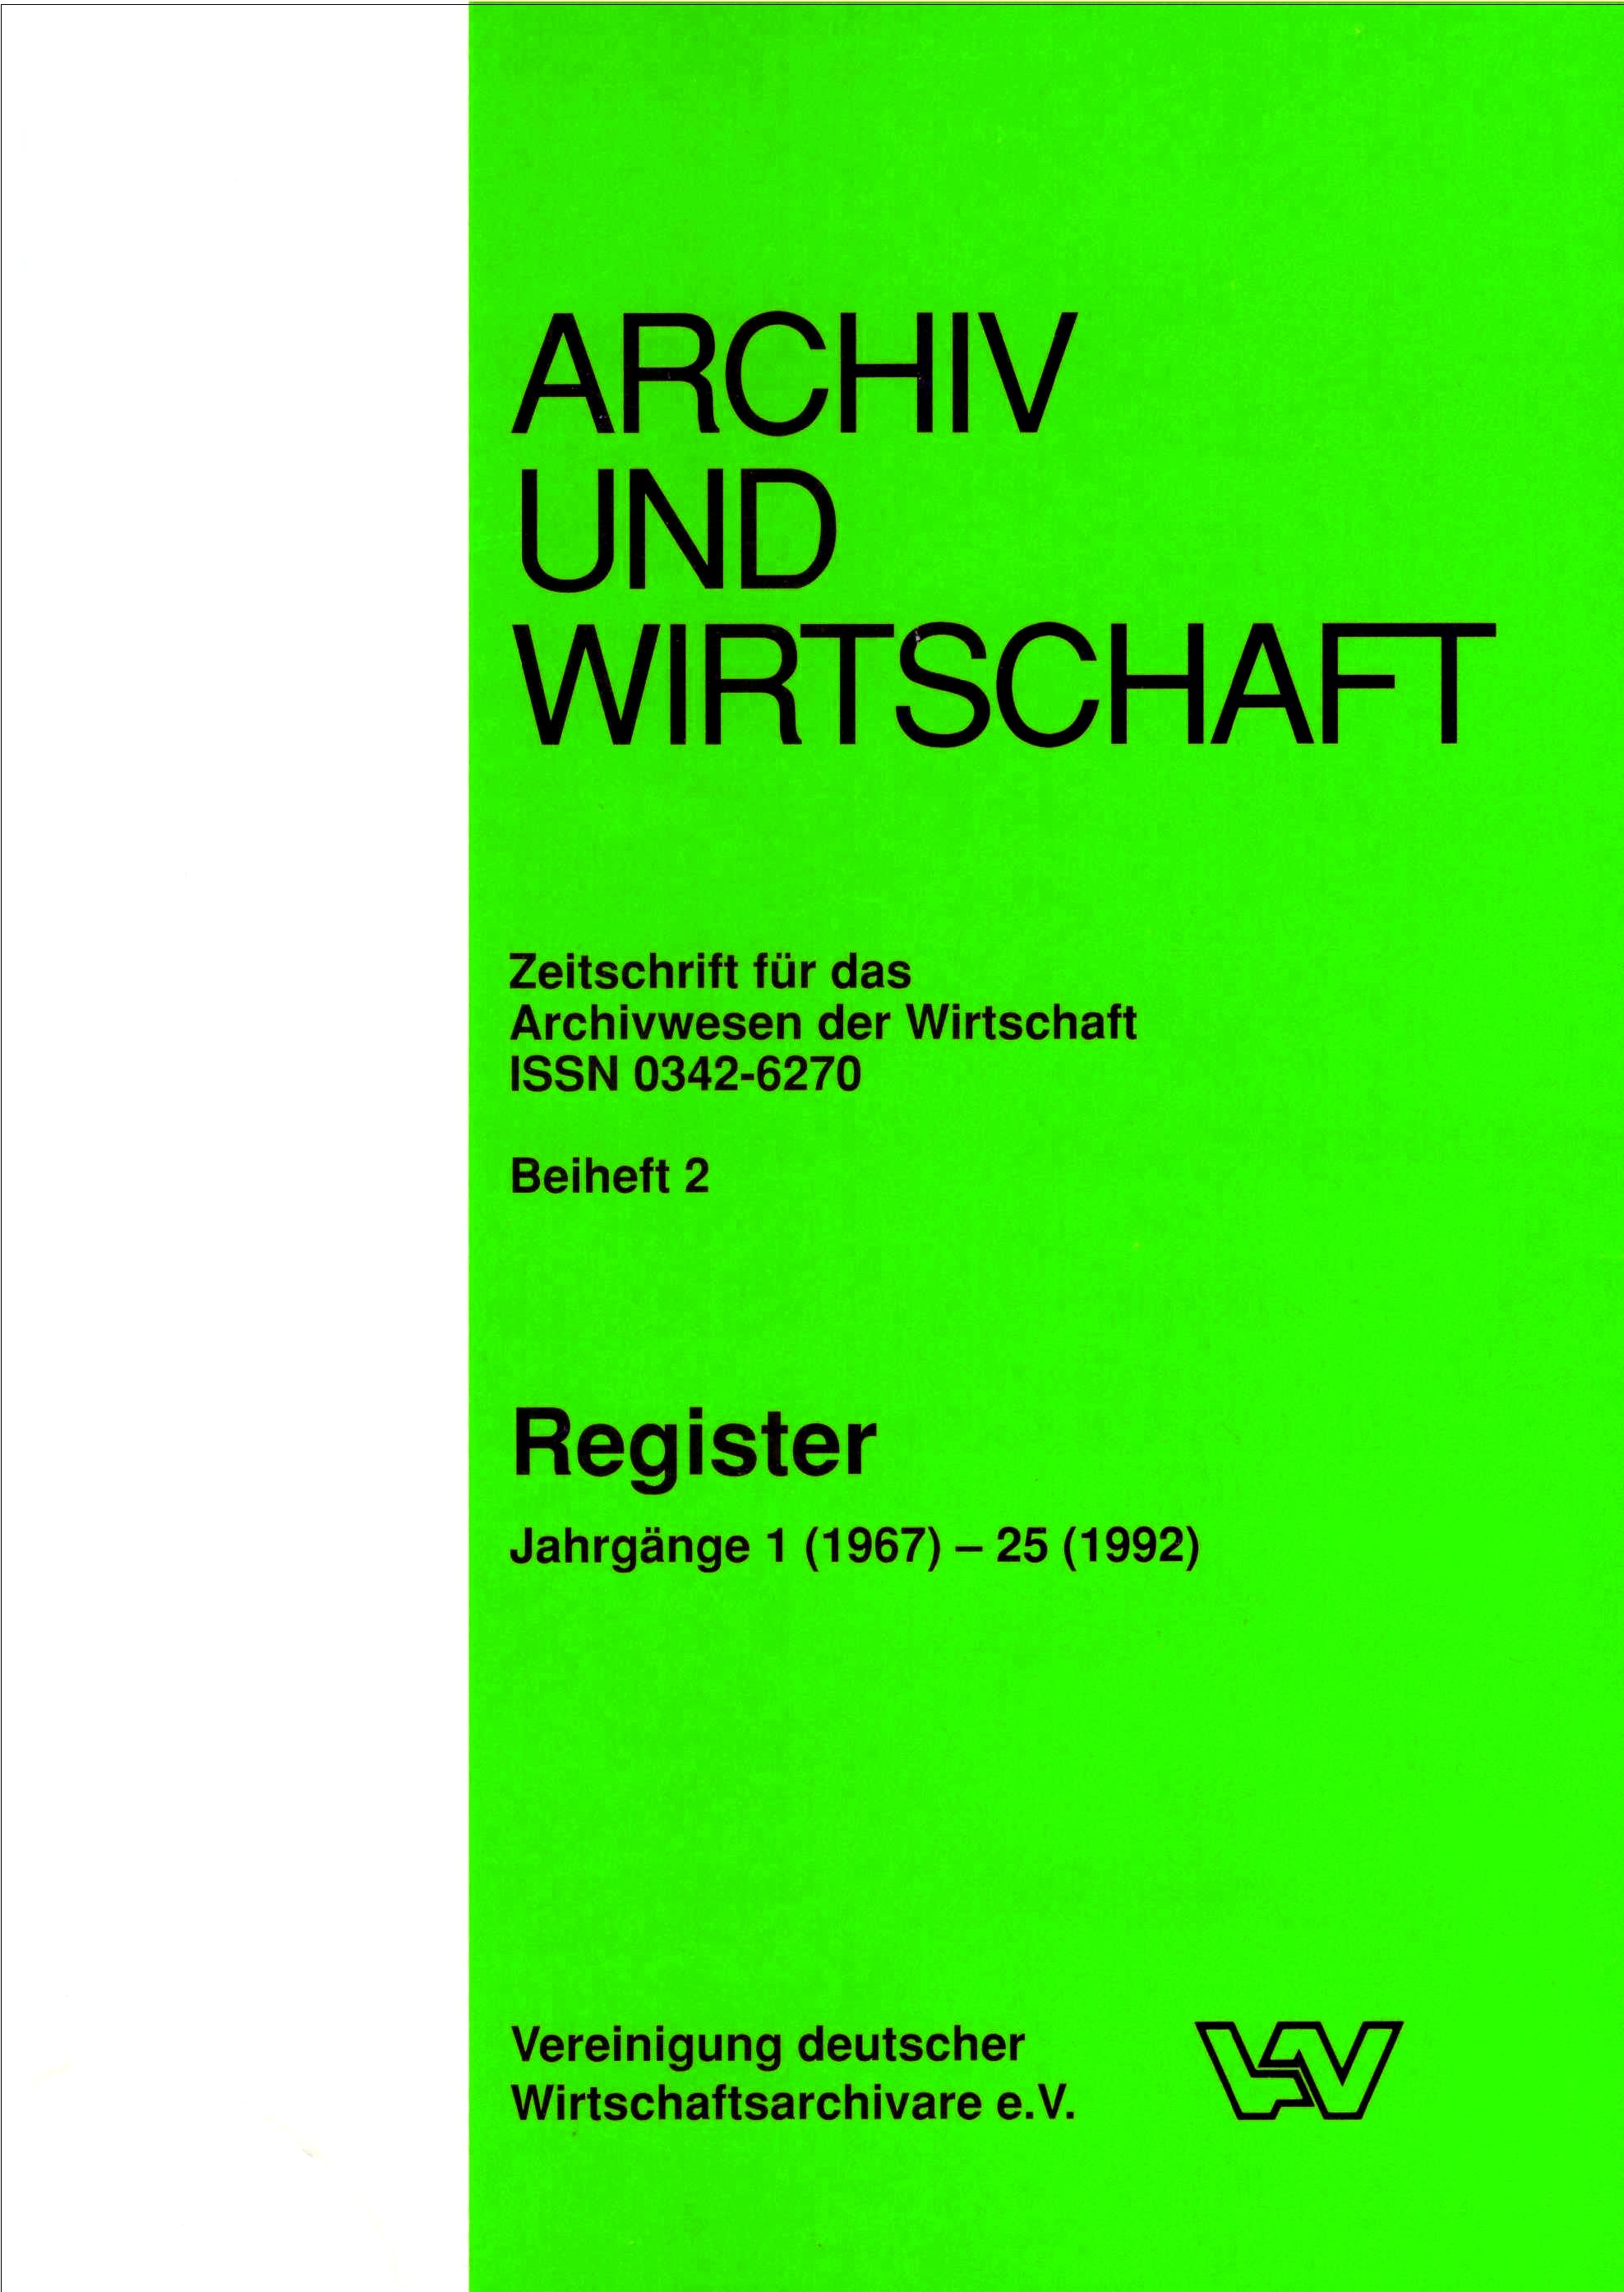 Archiv und Wirtschaft, Beiheft 2